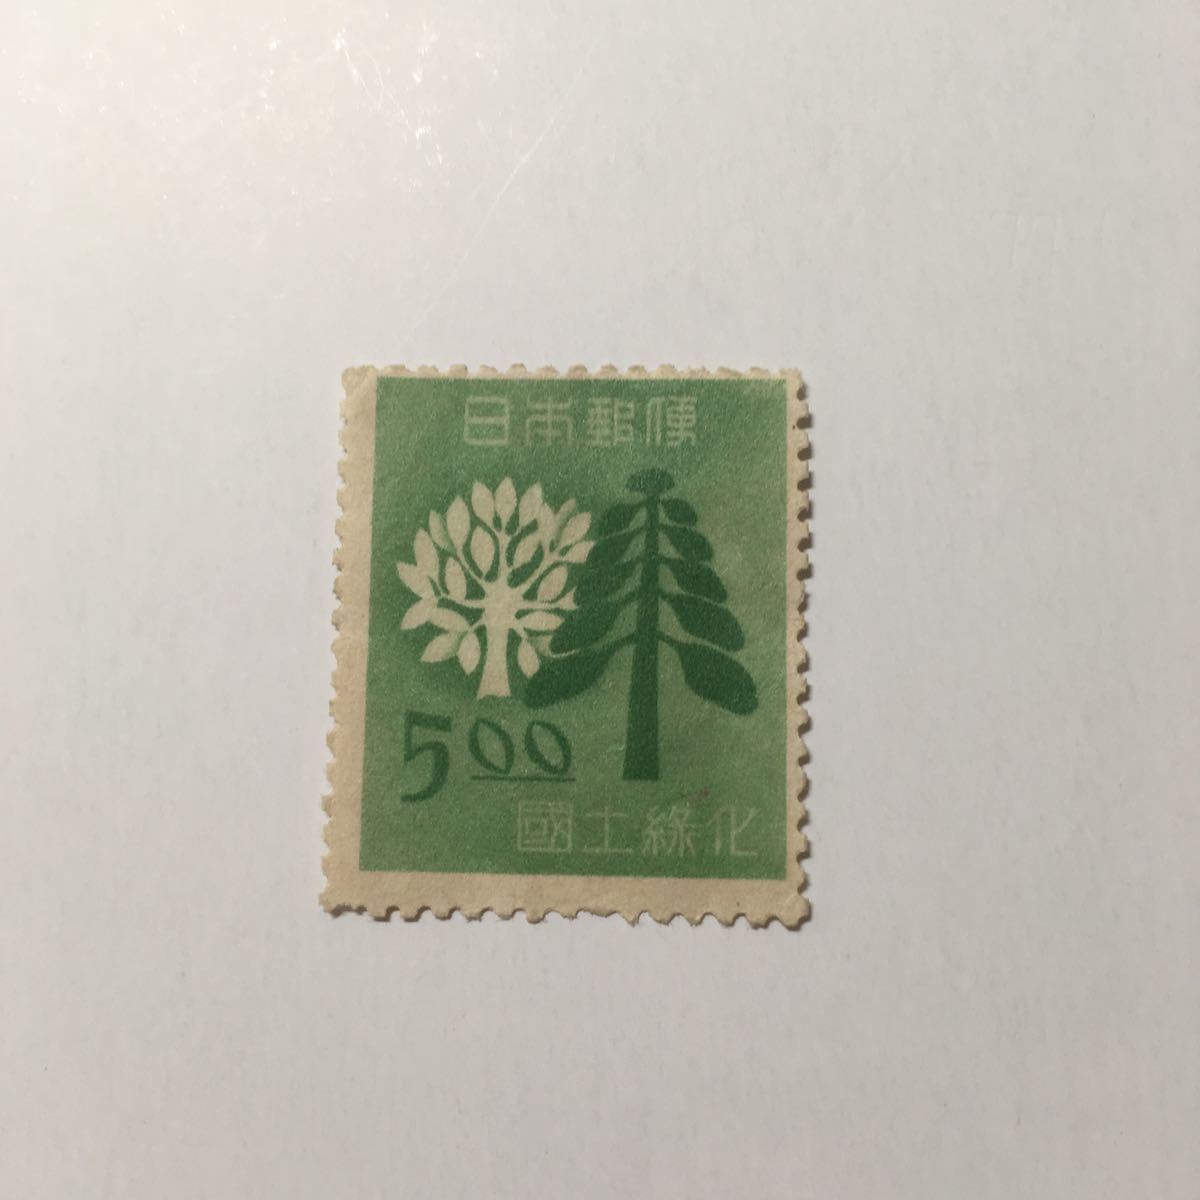  юбилейная марка 1949 год национальное лесонасаждение движение дерево 5 иен не использовался 